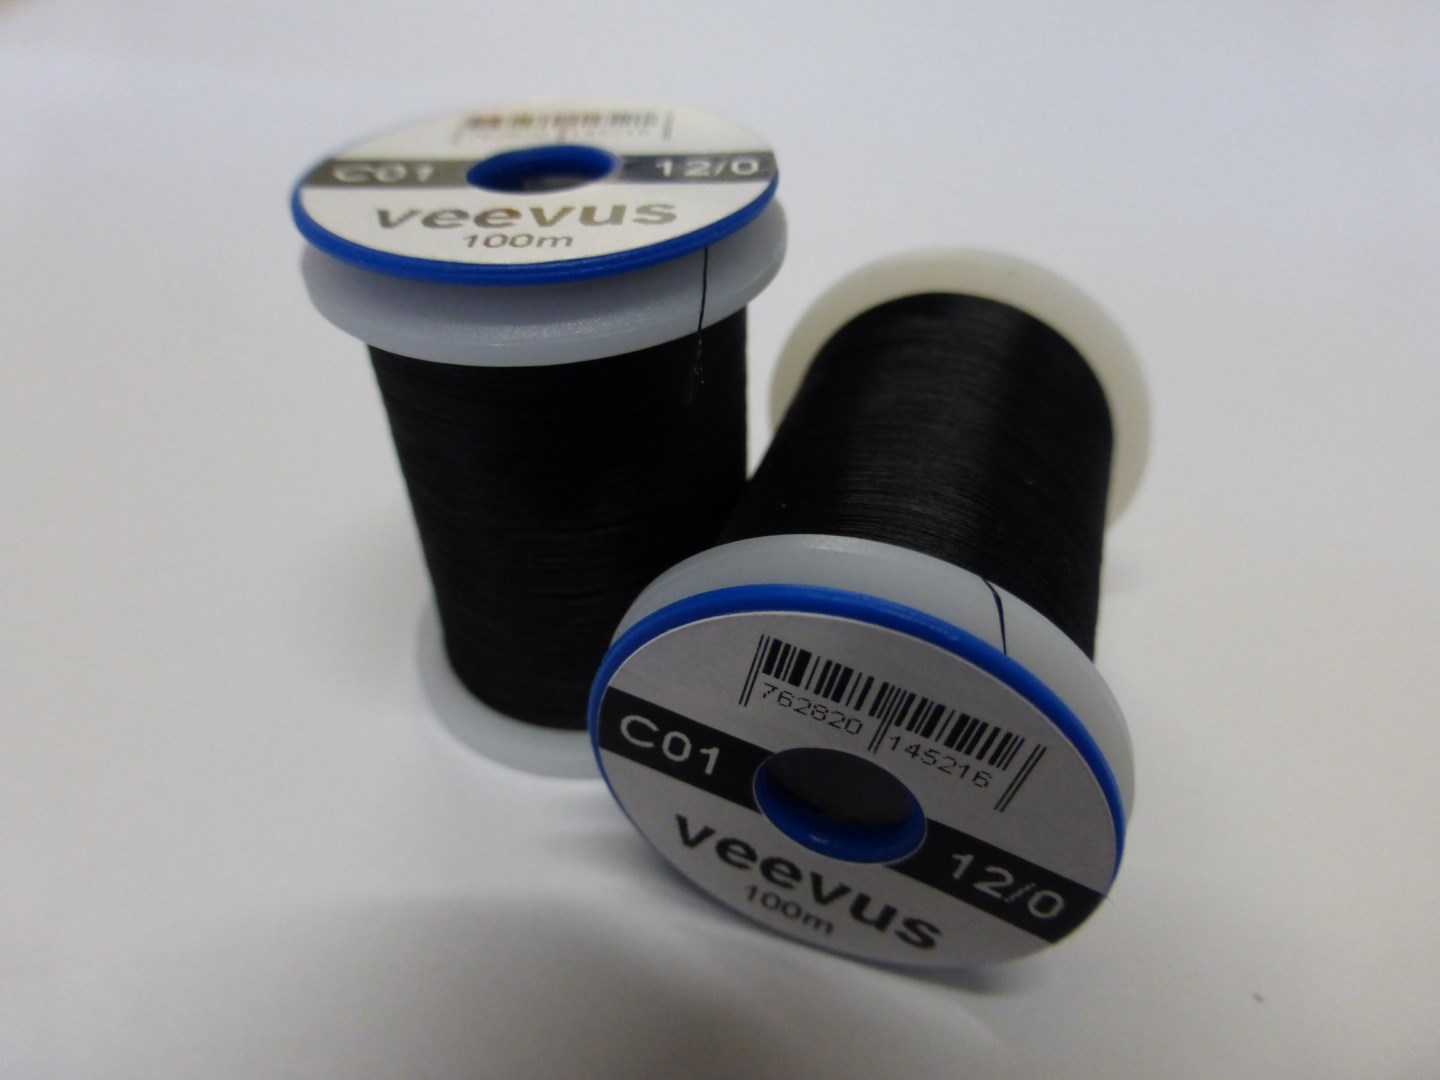 Veevus 12/0 Black C01